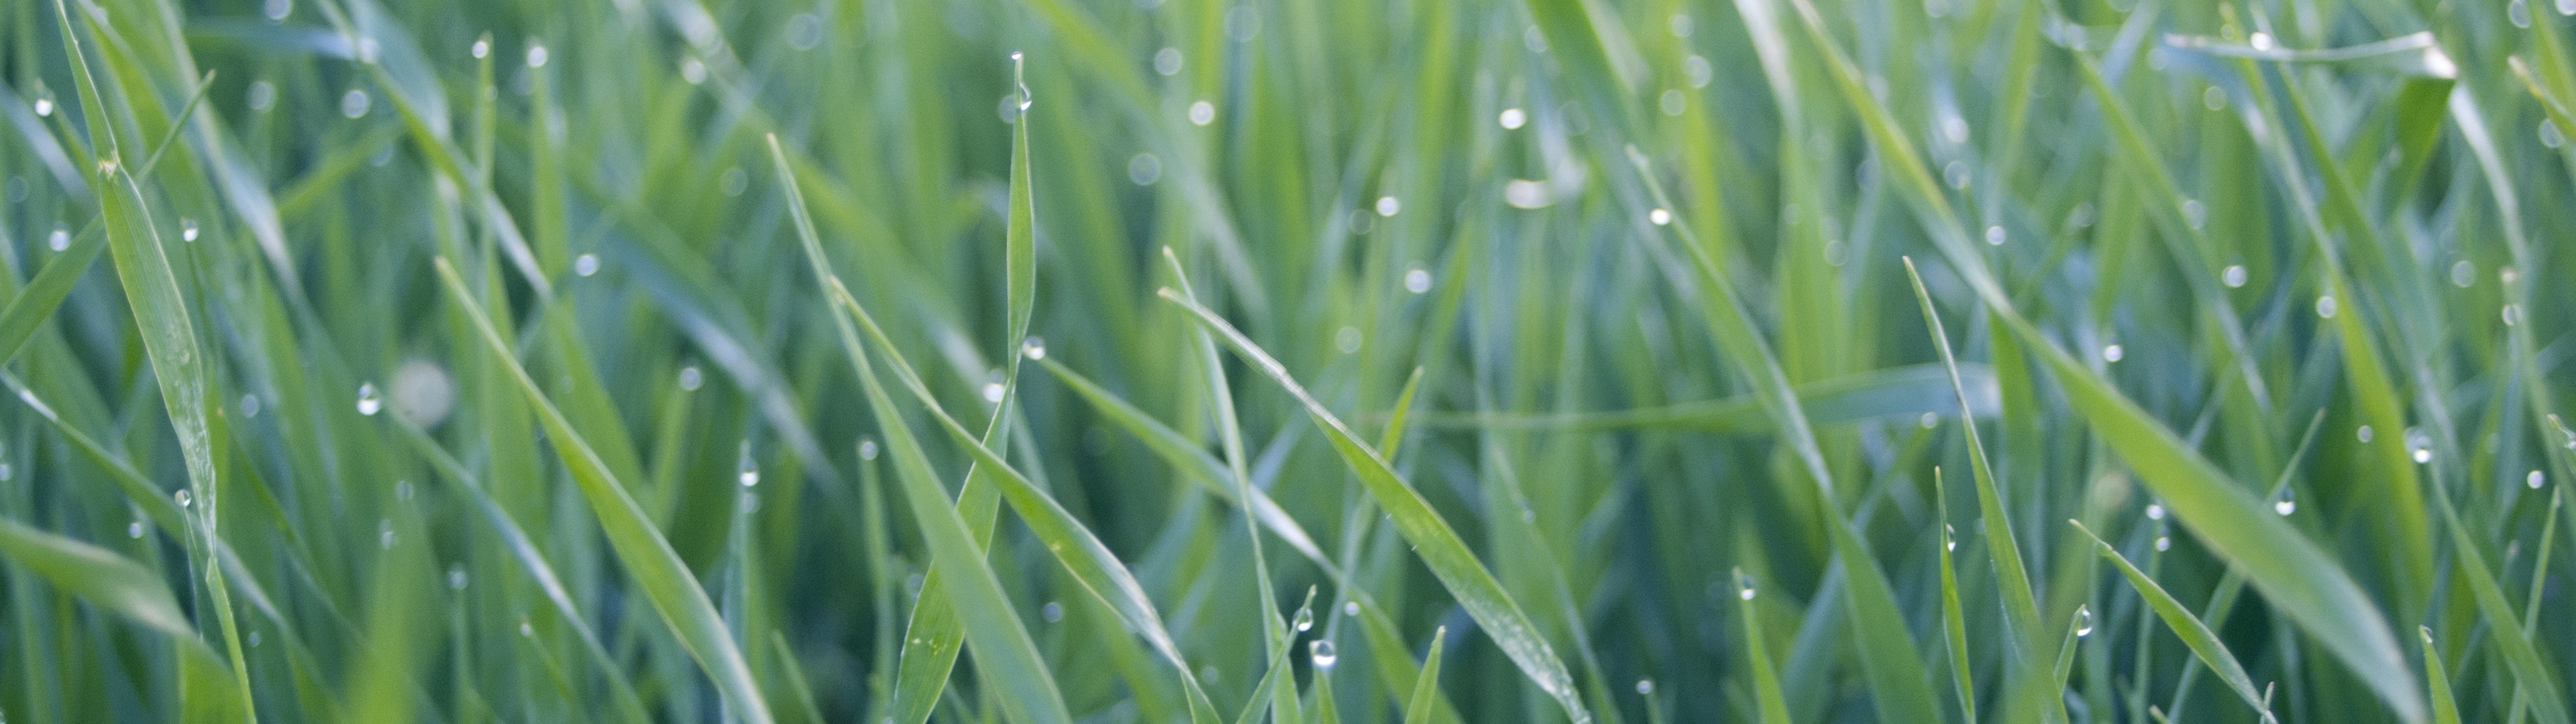 grass, Green, Water Drops Wallpaper